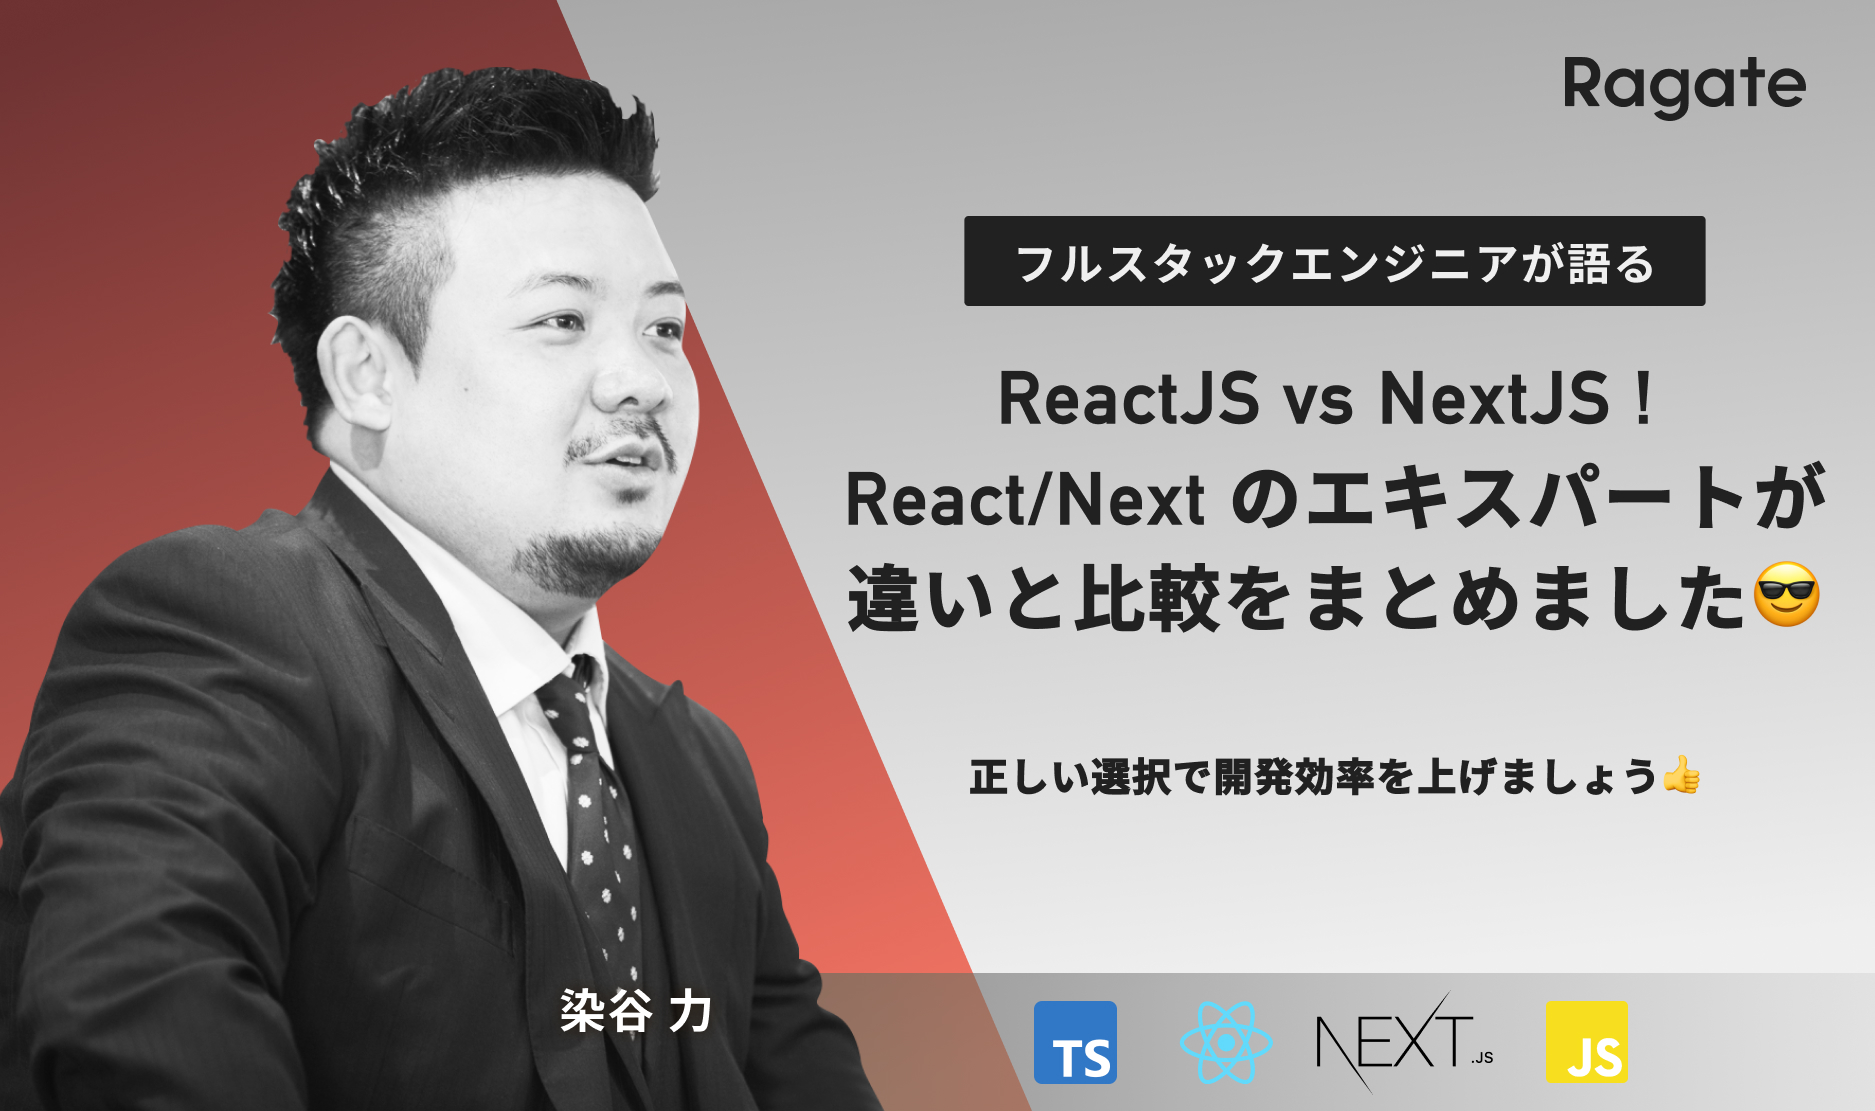 ReactJS vs NextJS ! React/Next のエキスパートが違いと比較をまとめました😎正しい選択で開発効率を上げましょう👍